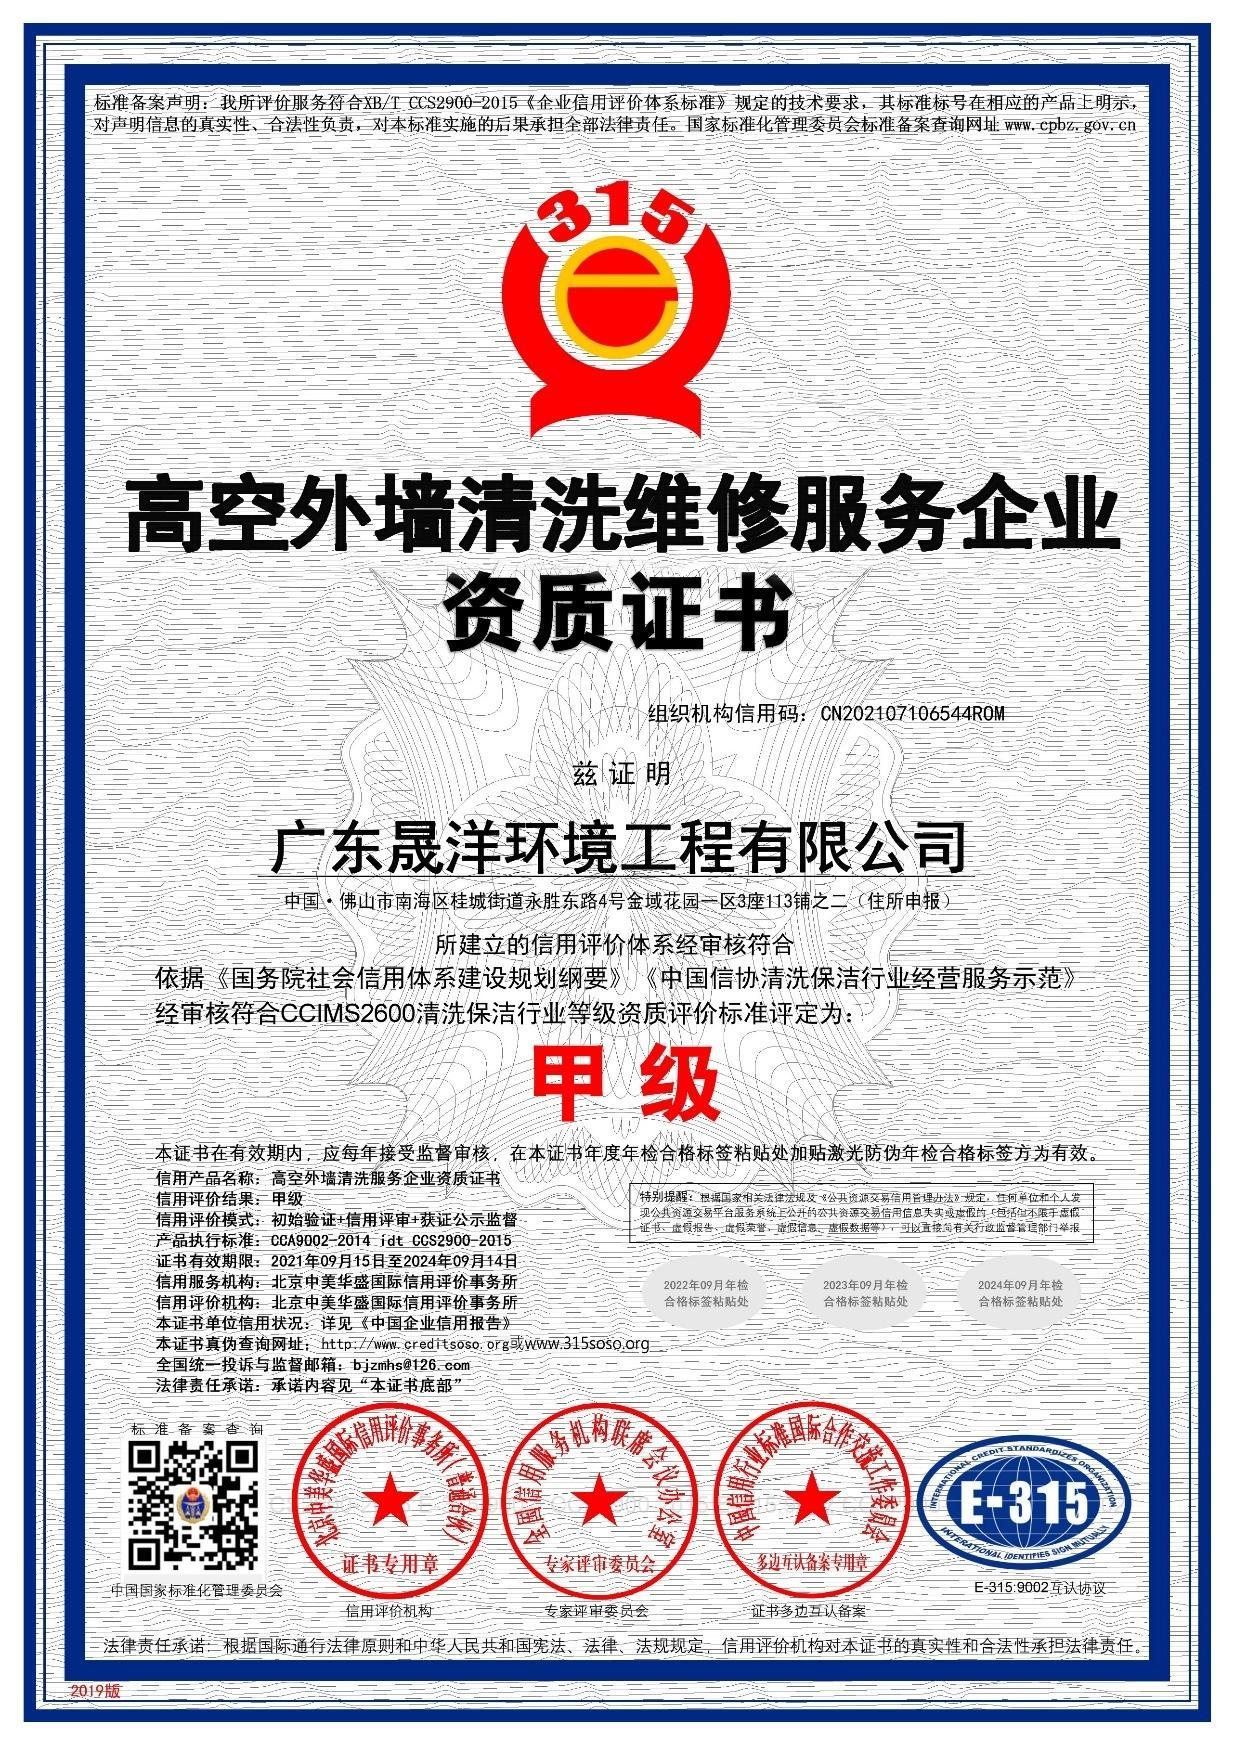 高空外墙清洗维修服務(wù)企业资质证书